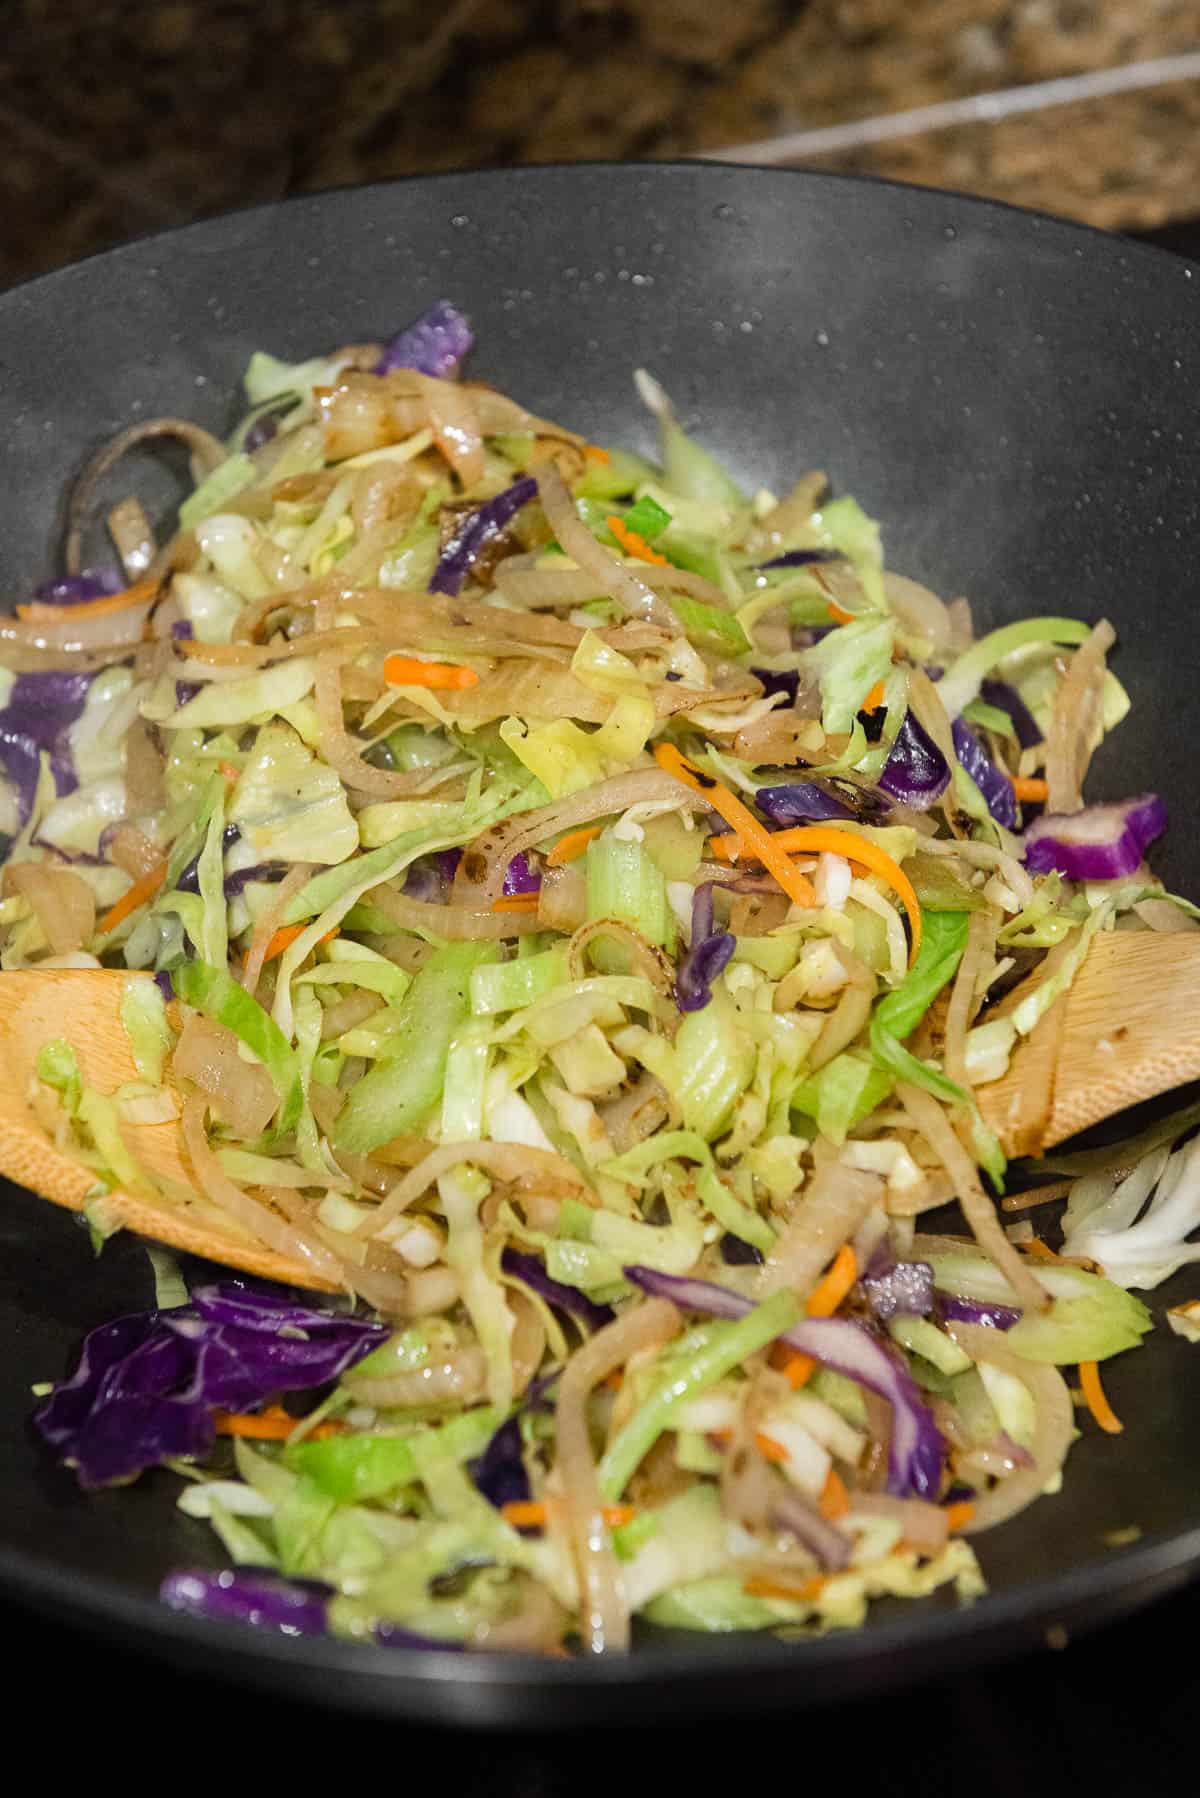 cabbage, onions, in celery stir fry in wok